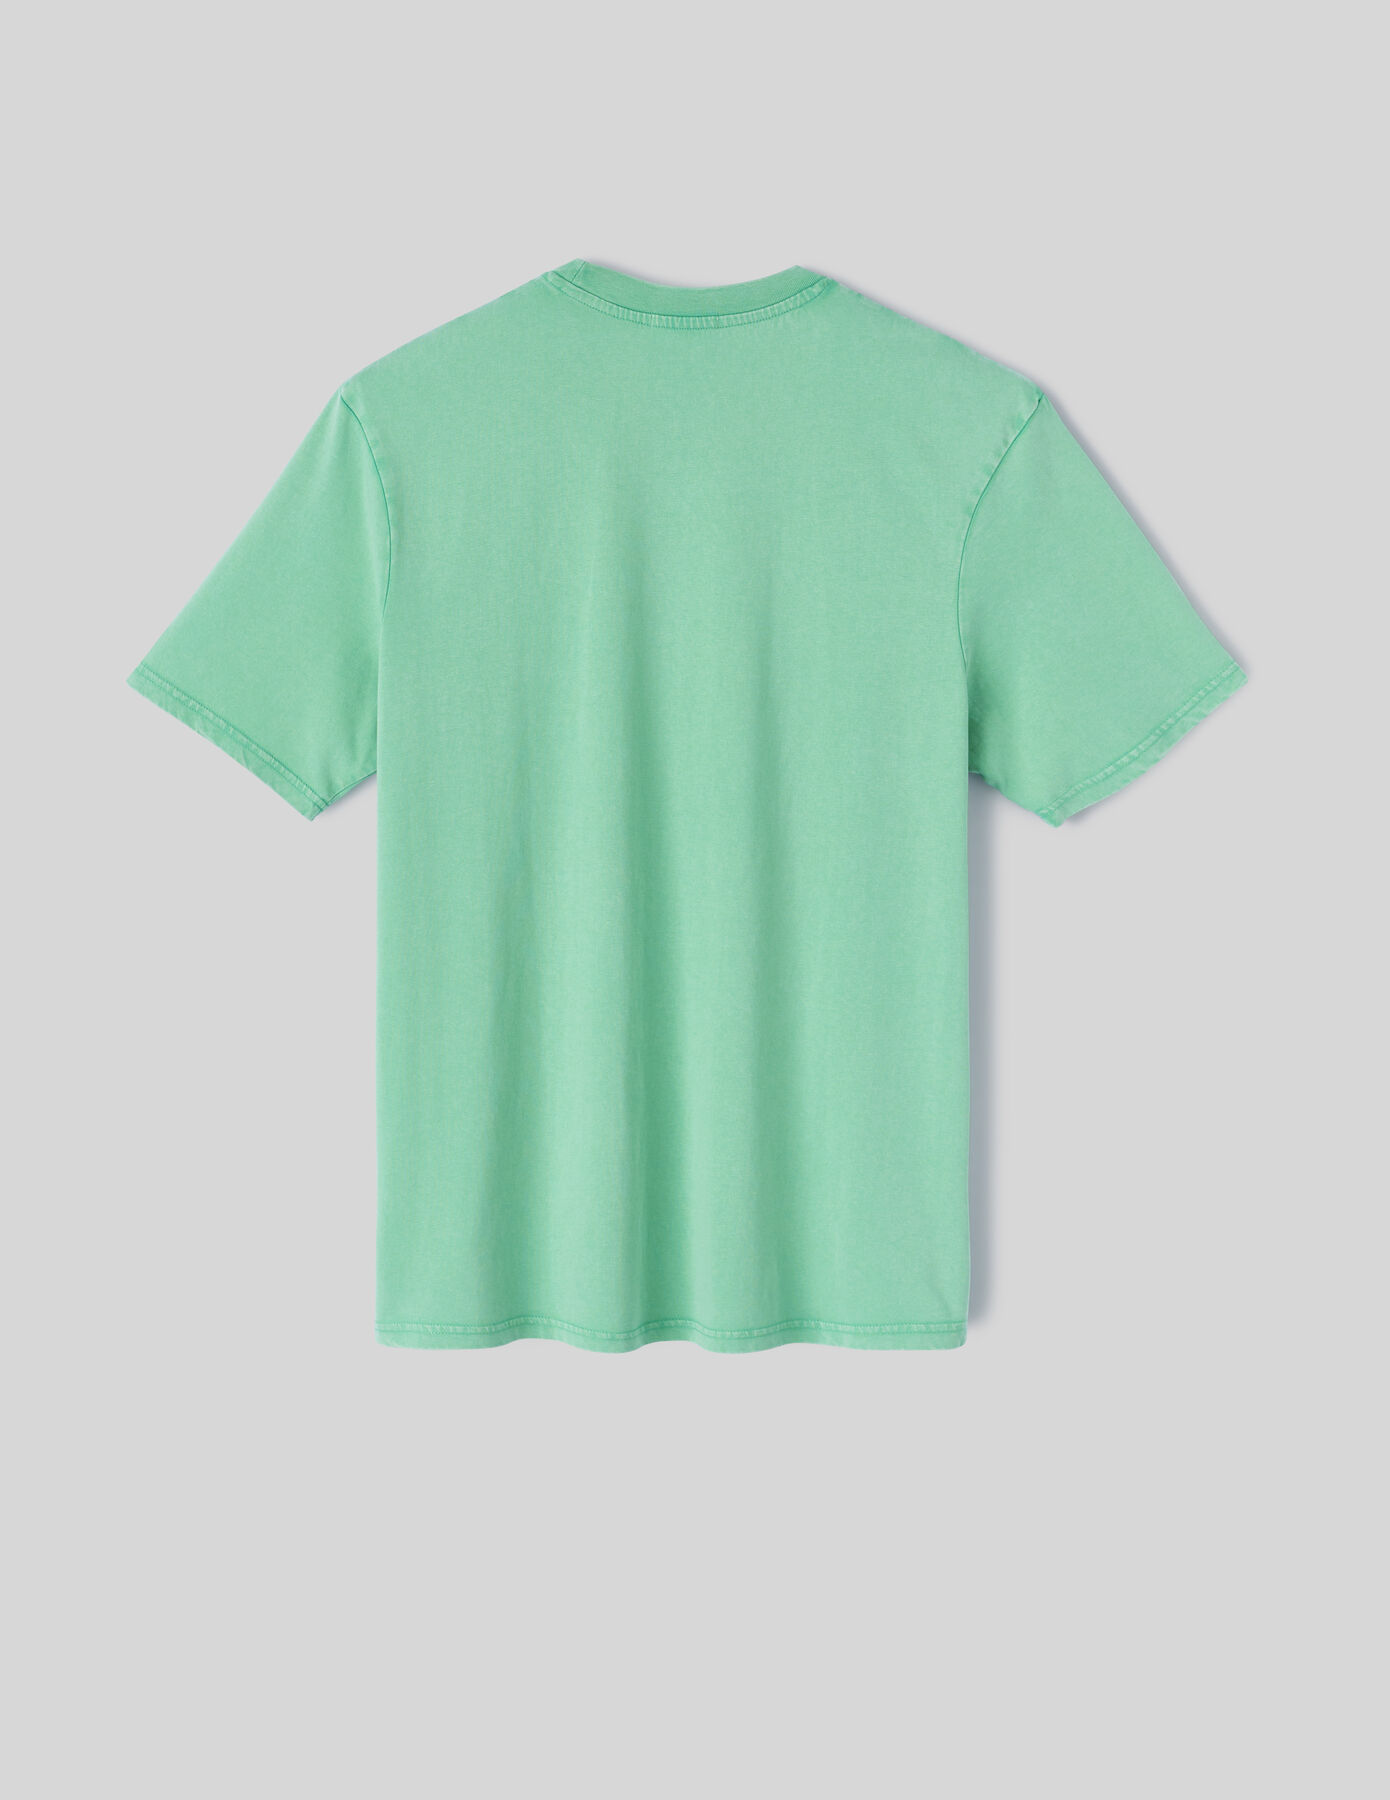 T-shirt garment dye brodé